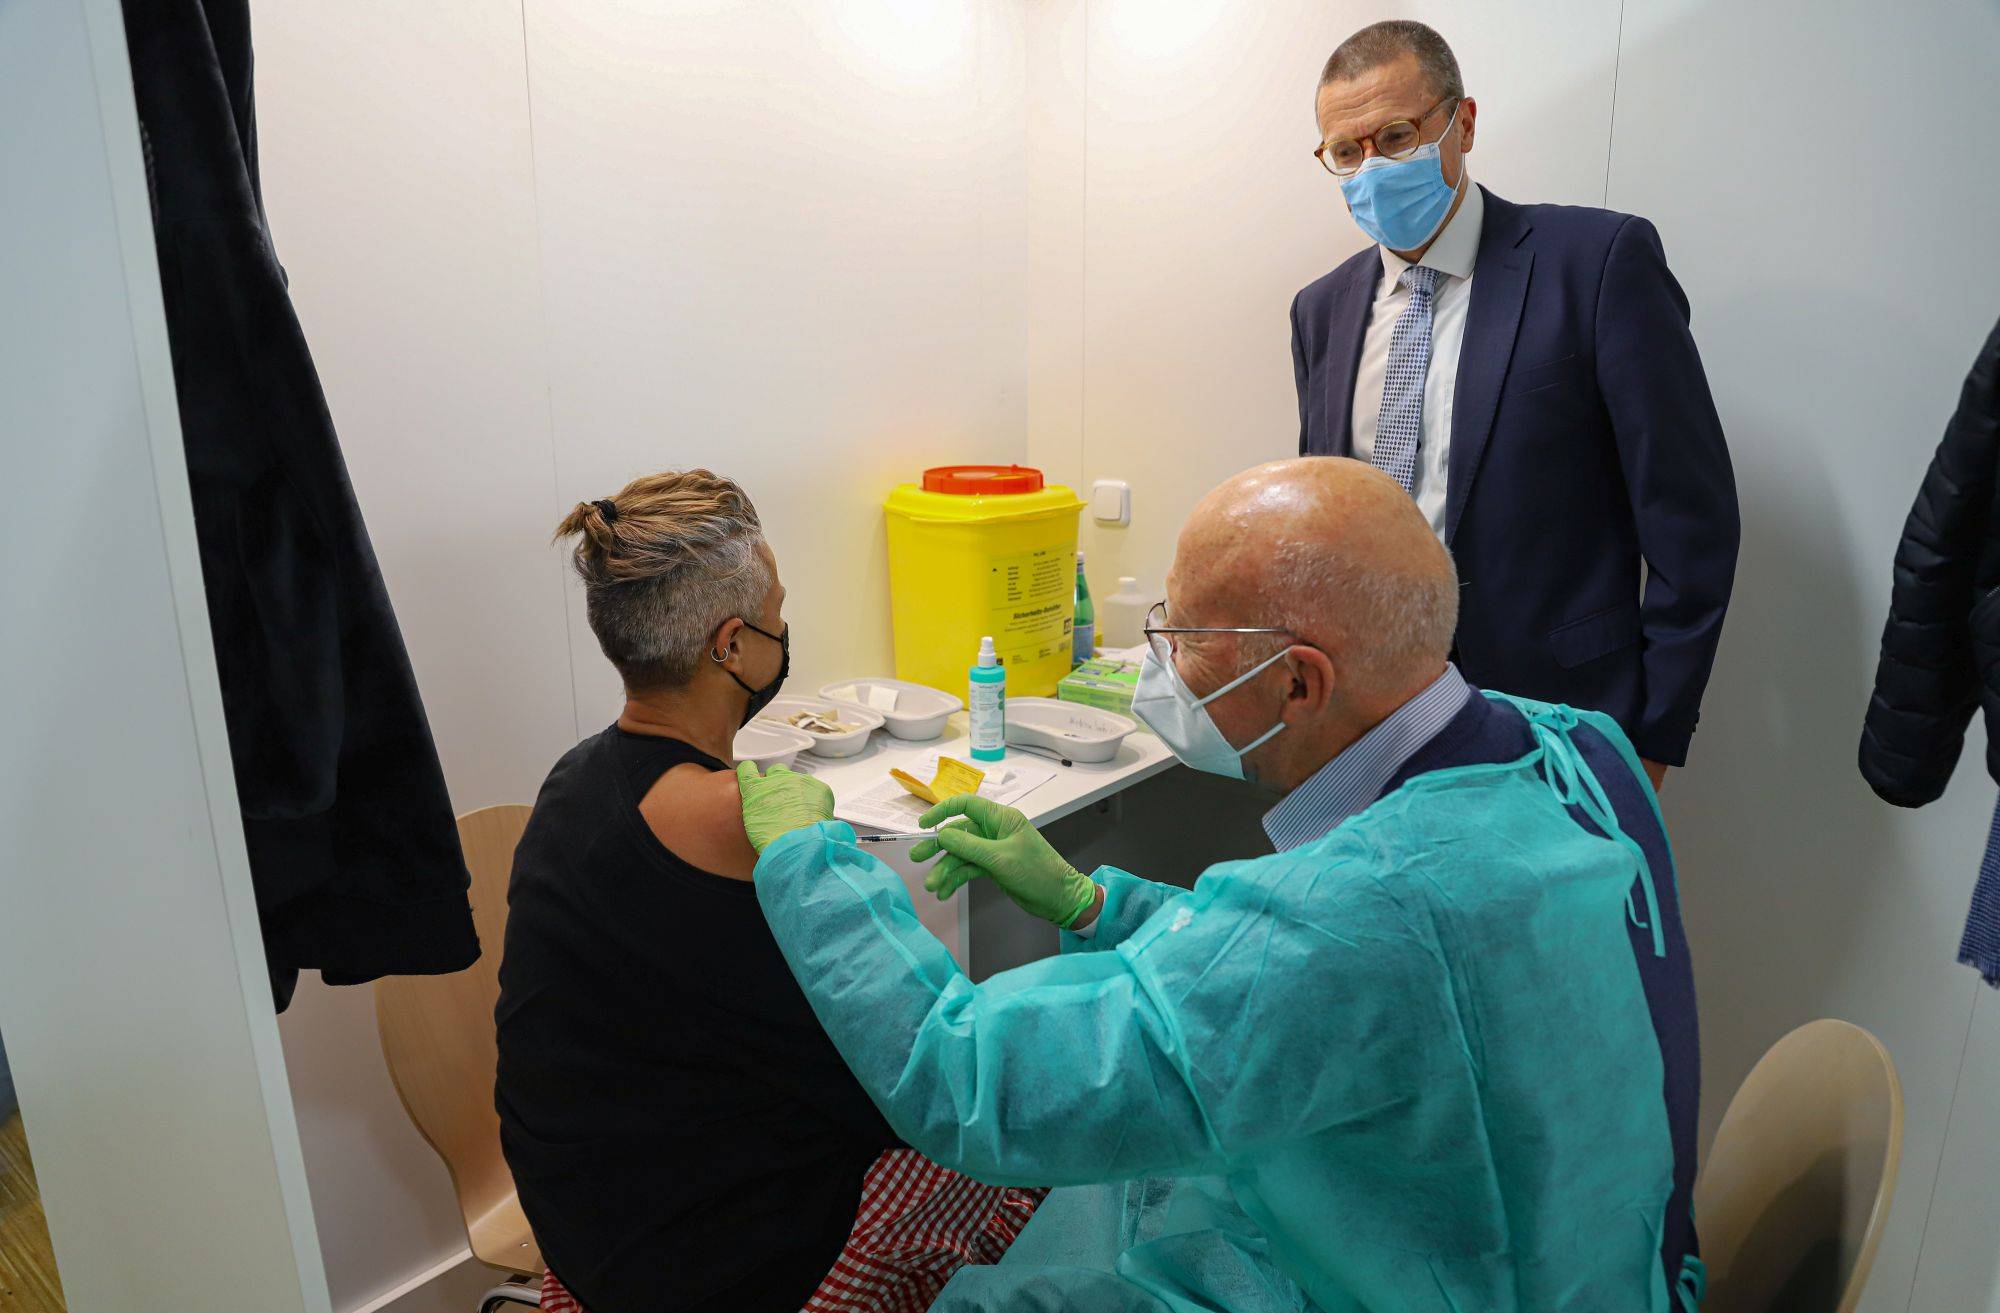  Oberbürgermeister Uwe Schneidewind unterhält sich mit einer Frau, die gerade geimpft wird. 